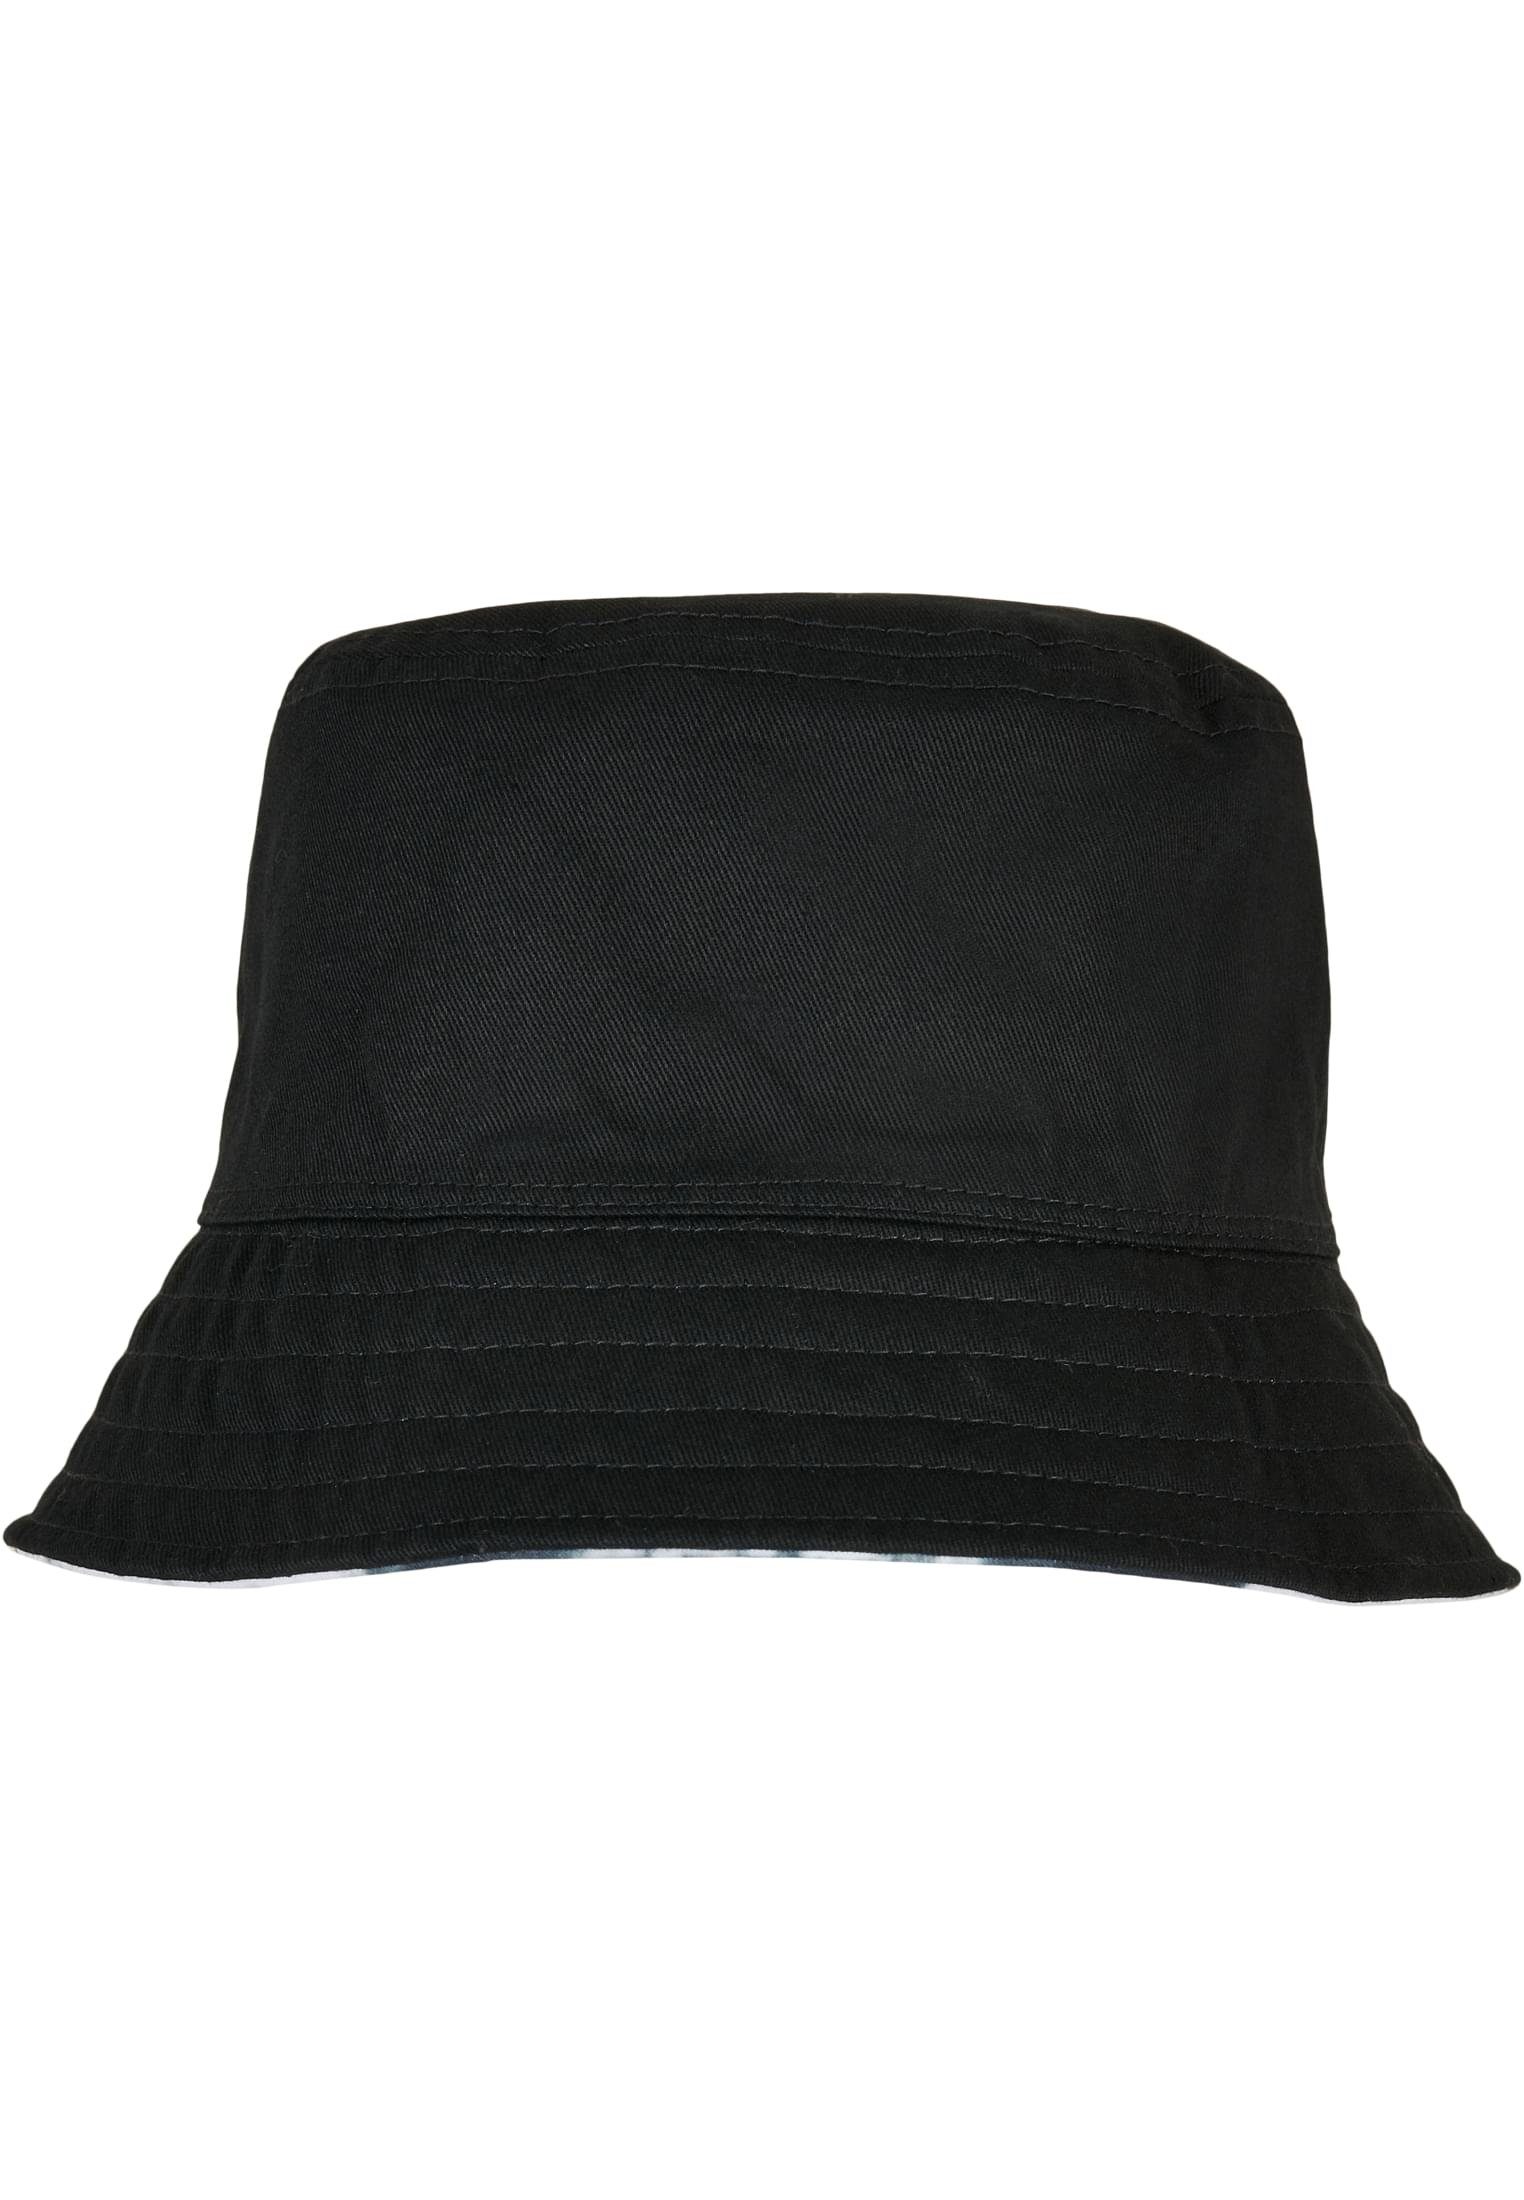 Accessoires Hat Flex Reversible Batik Dye Cap Bucket Flexfit